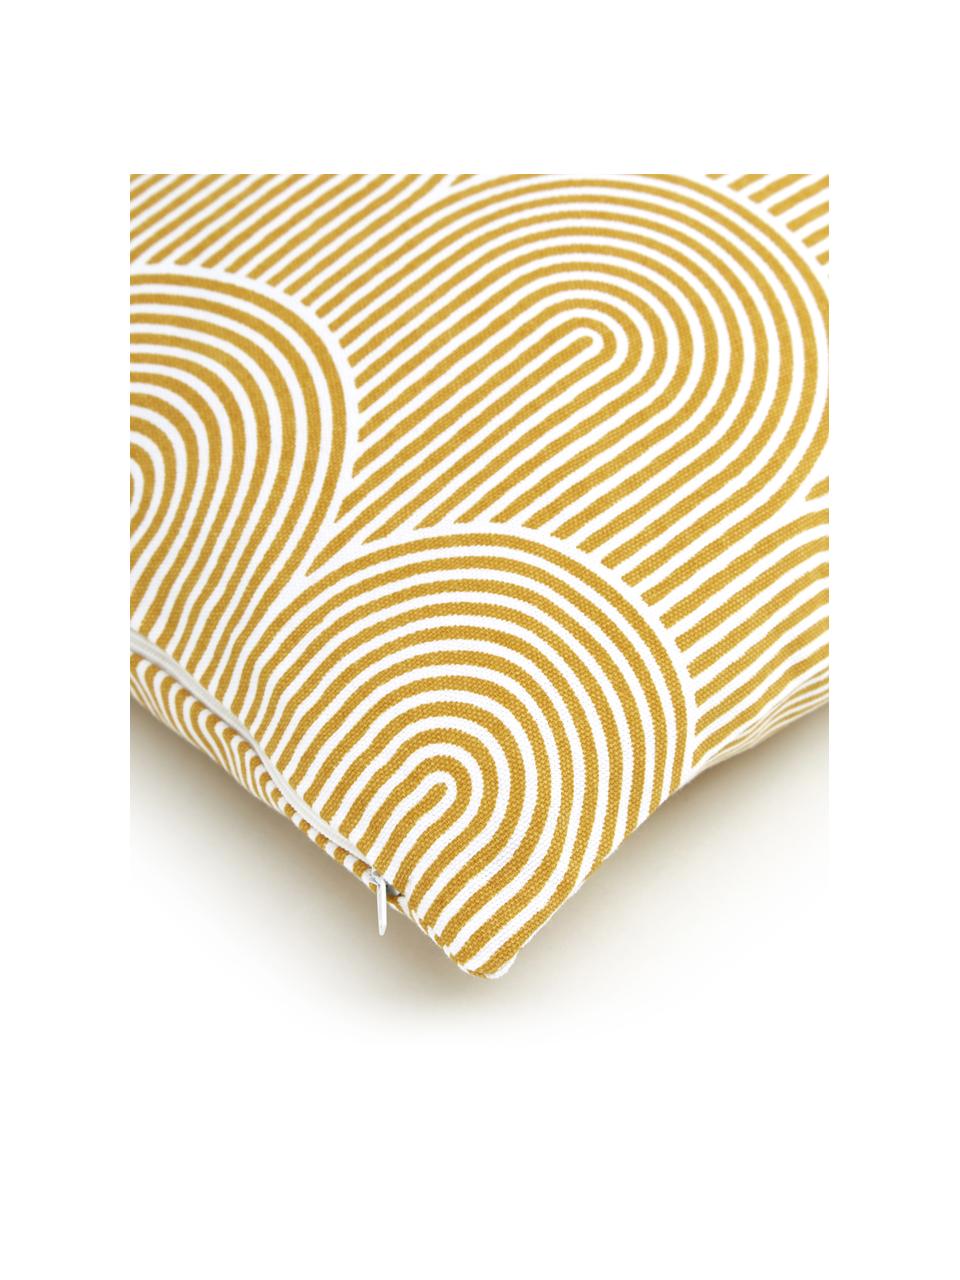 Katoenen kussenhoes Arc in geel/wit, 100% katoen, Geel, B 45 x L 45 cm